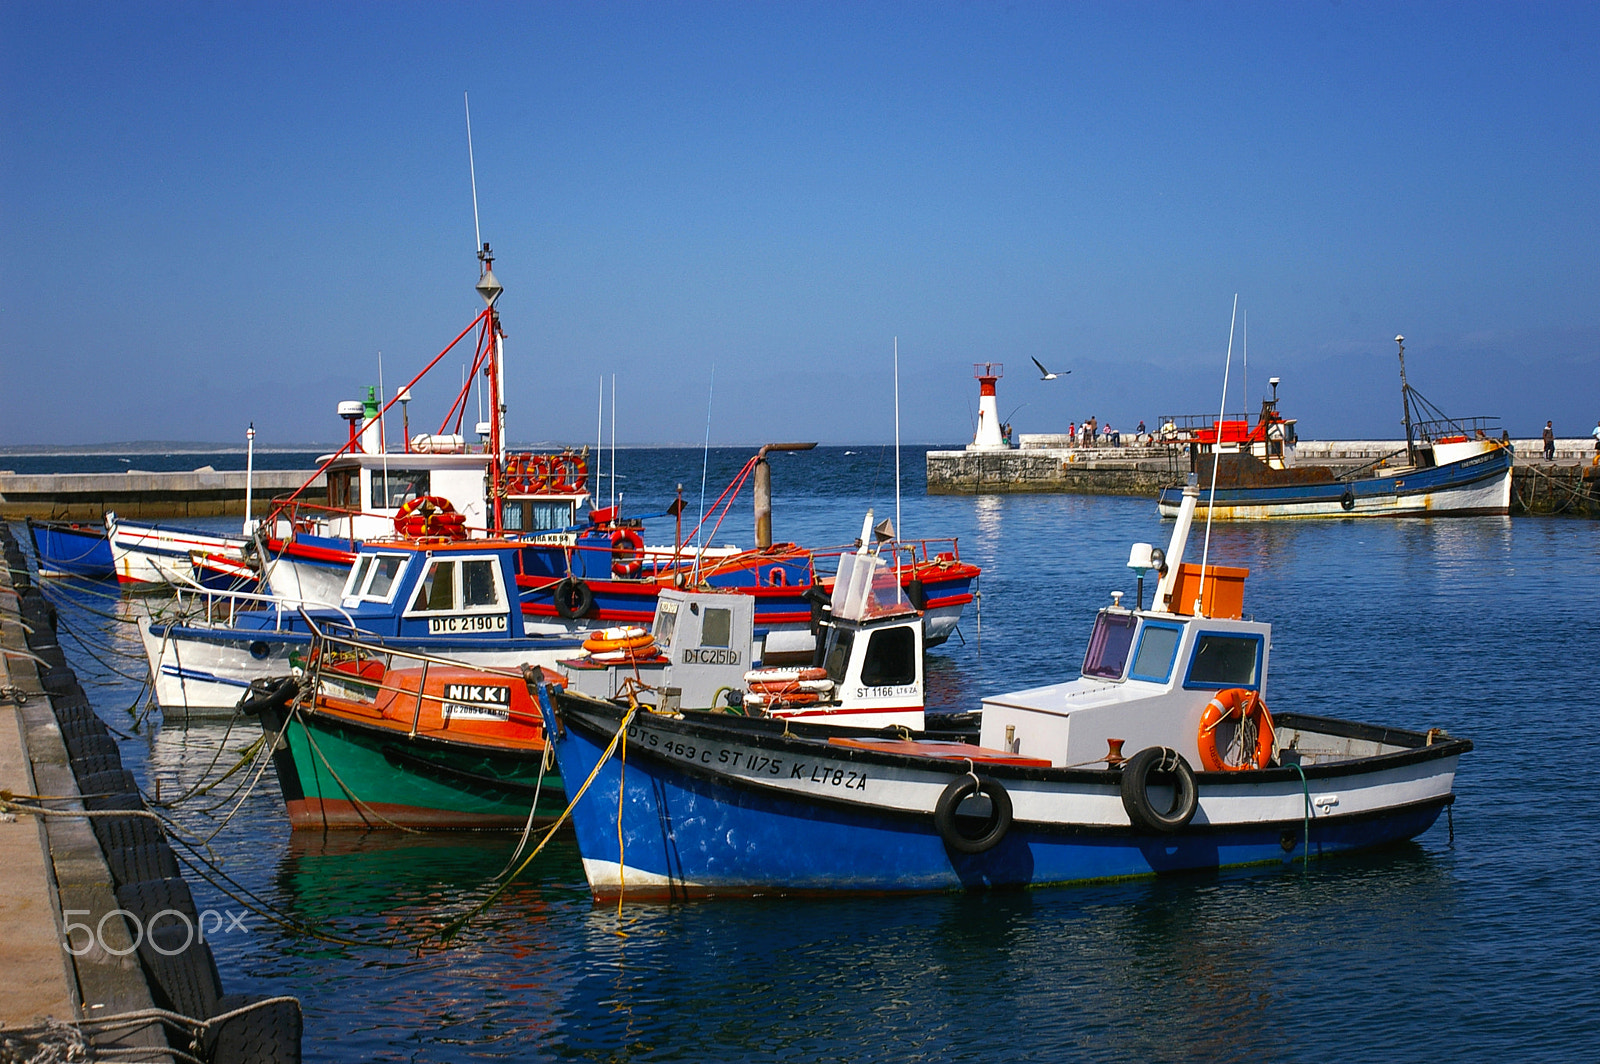 Pentax *ist DL sample photo. Quaint harbour photography